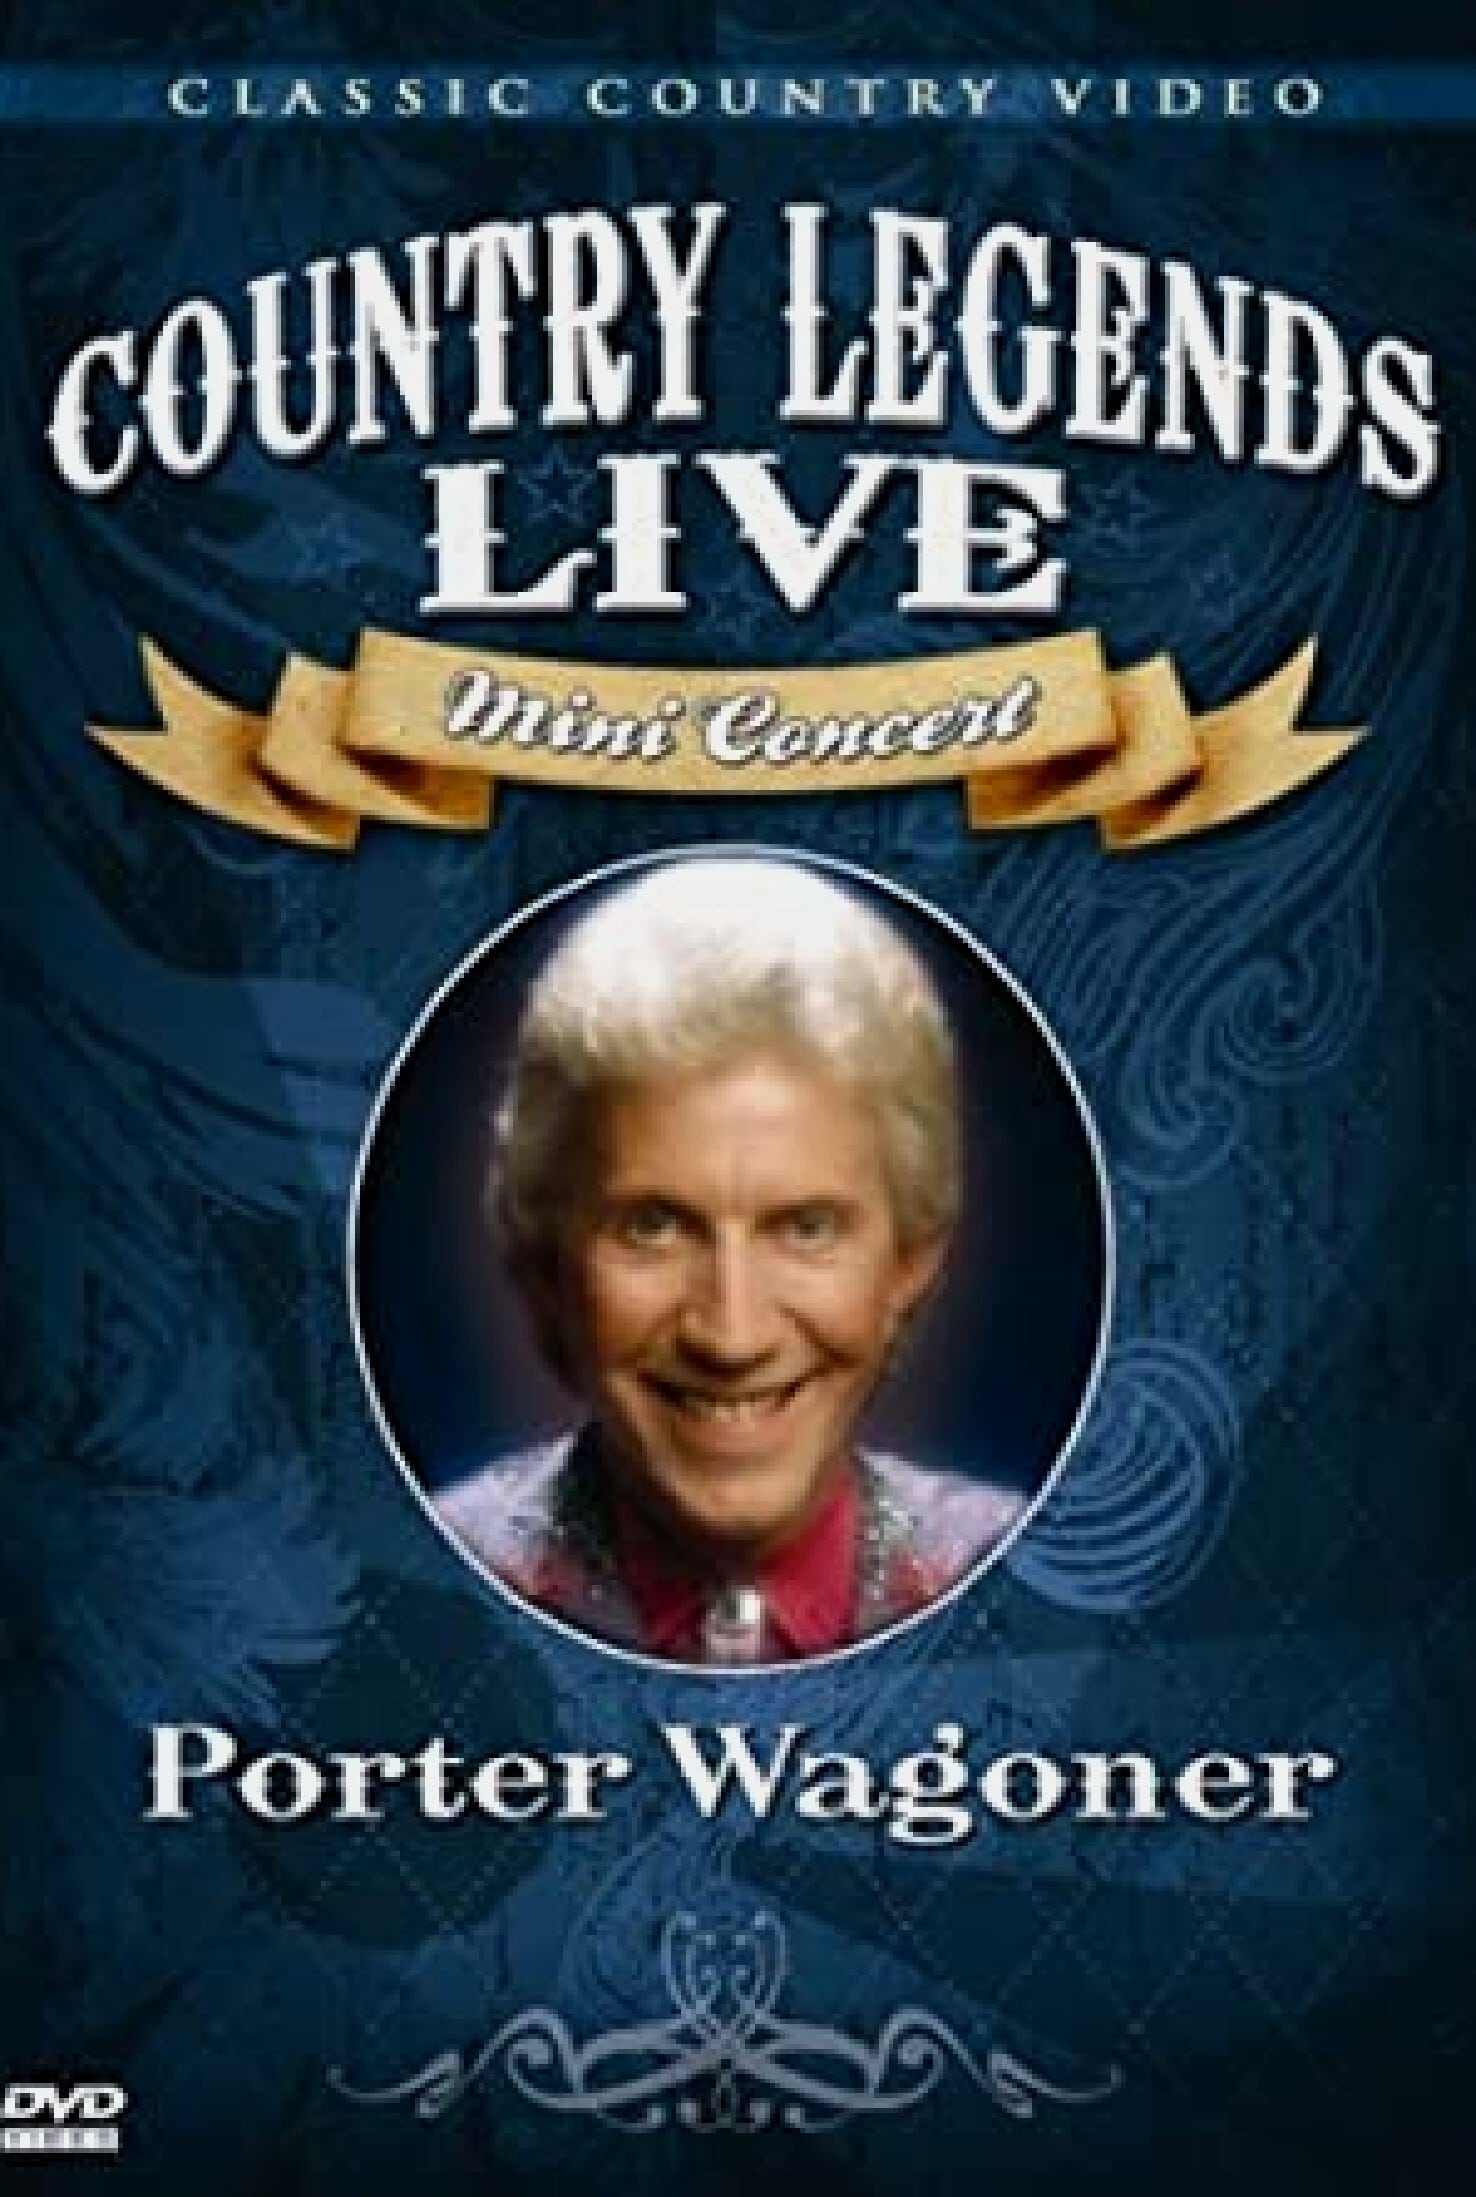 Porter Wagoner: Country Legends Live Mini Concert